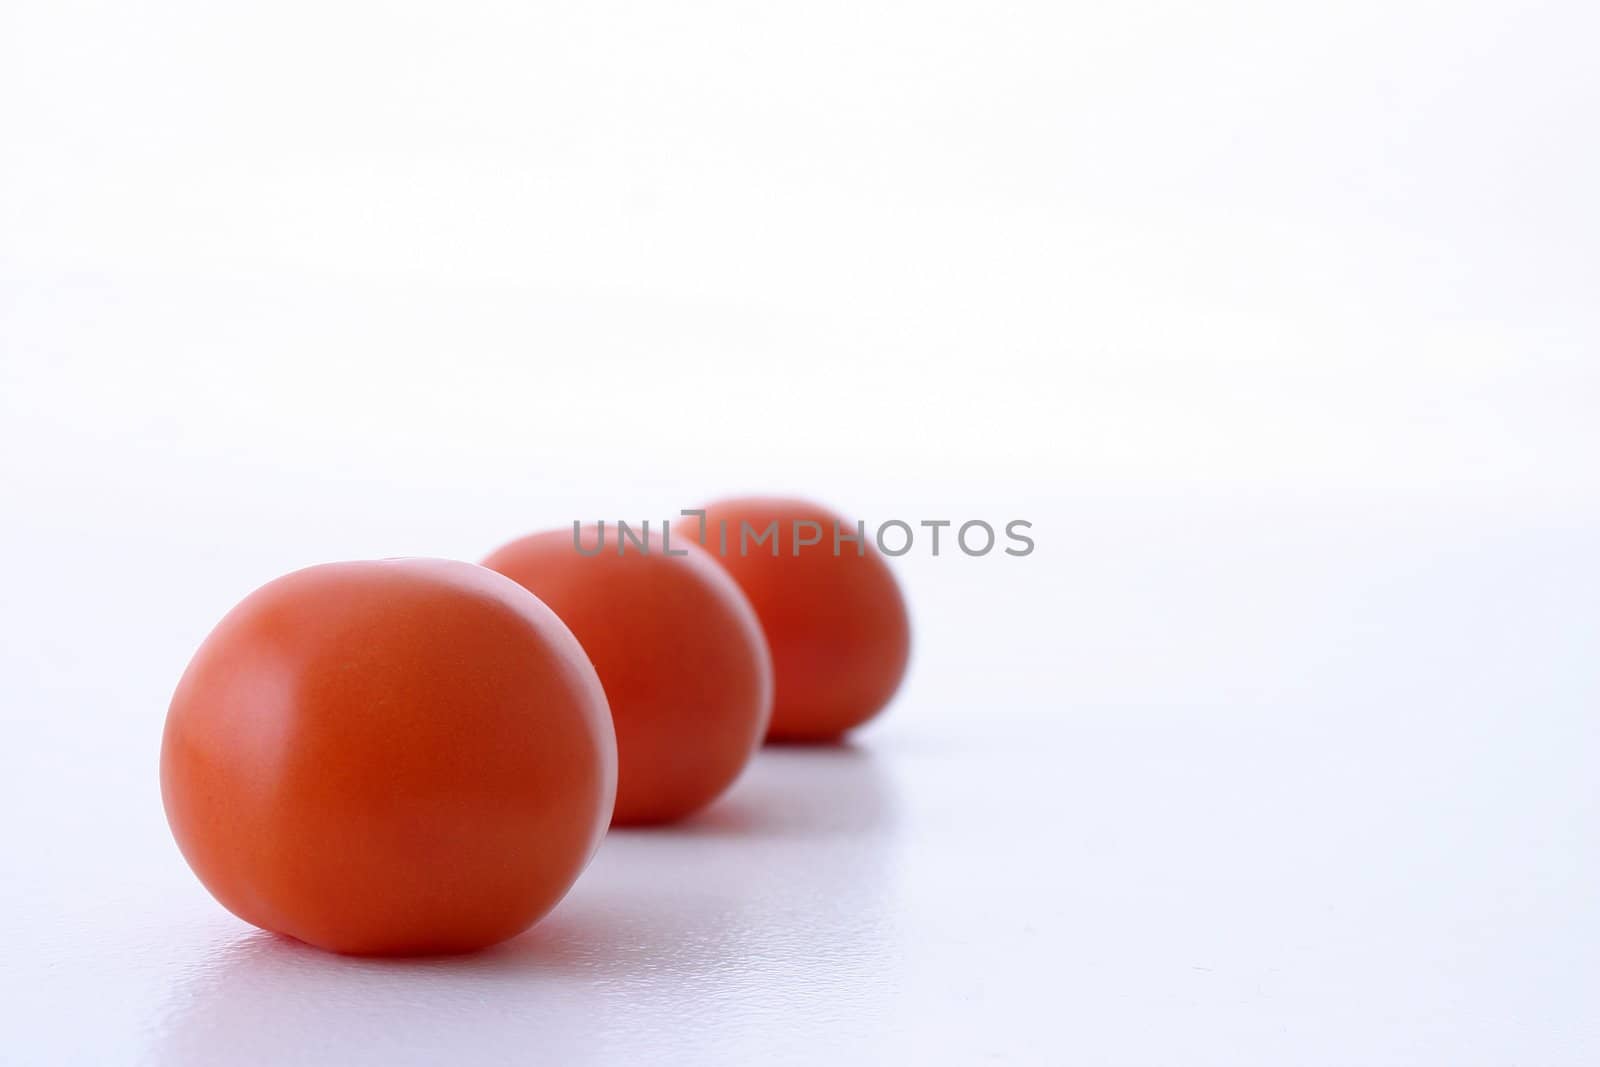 Tree tomatoes on a row. Taken on white background